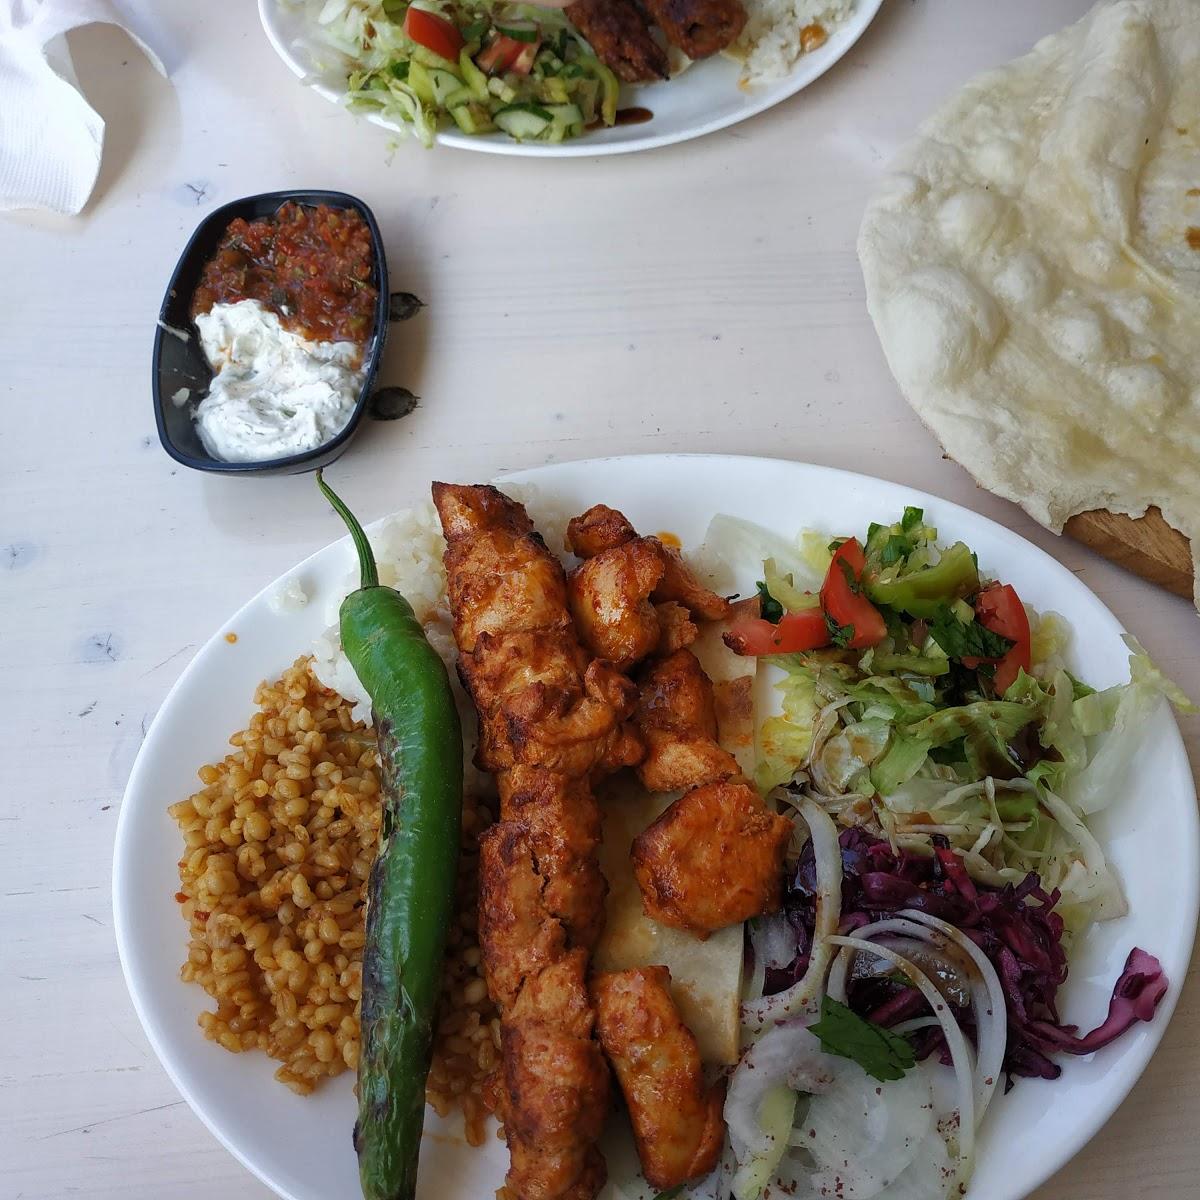 Restaurant "Istanbul türkisches Restaurant" in Hanau